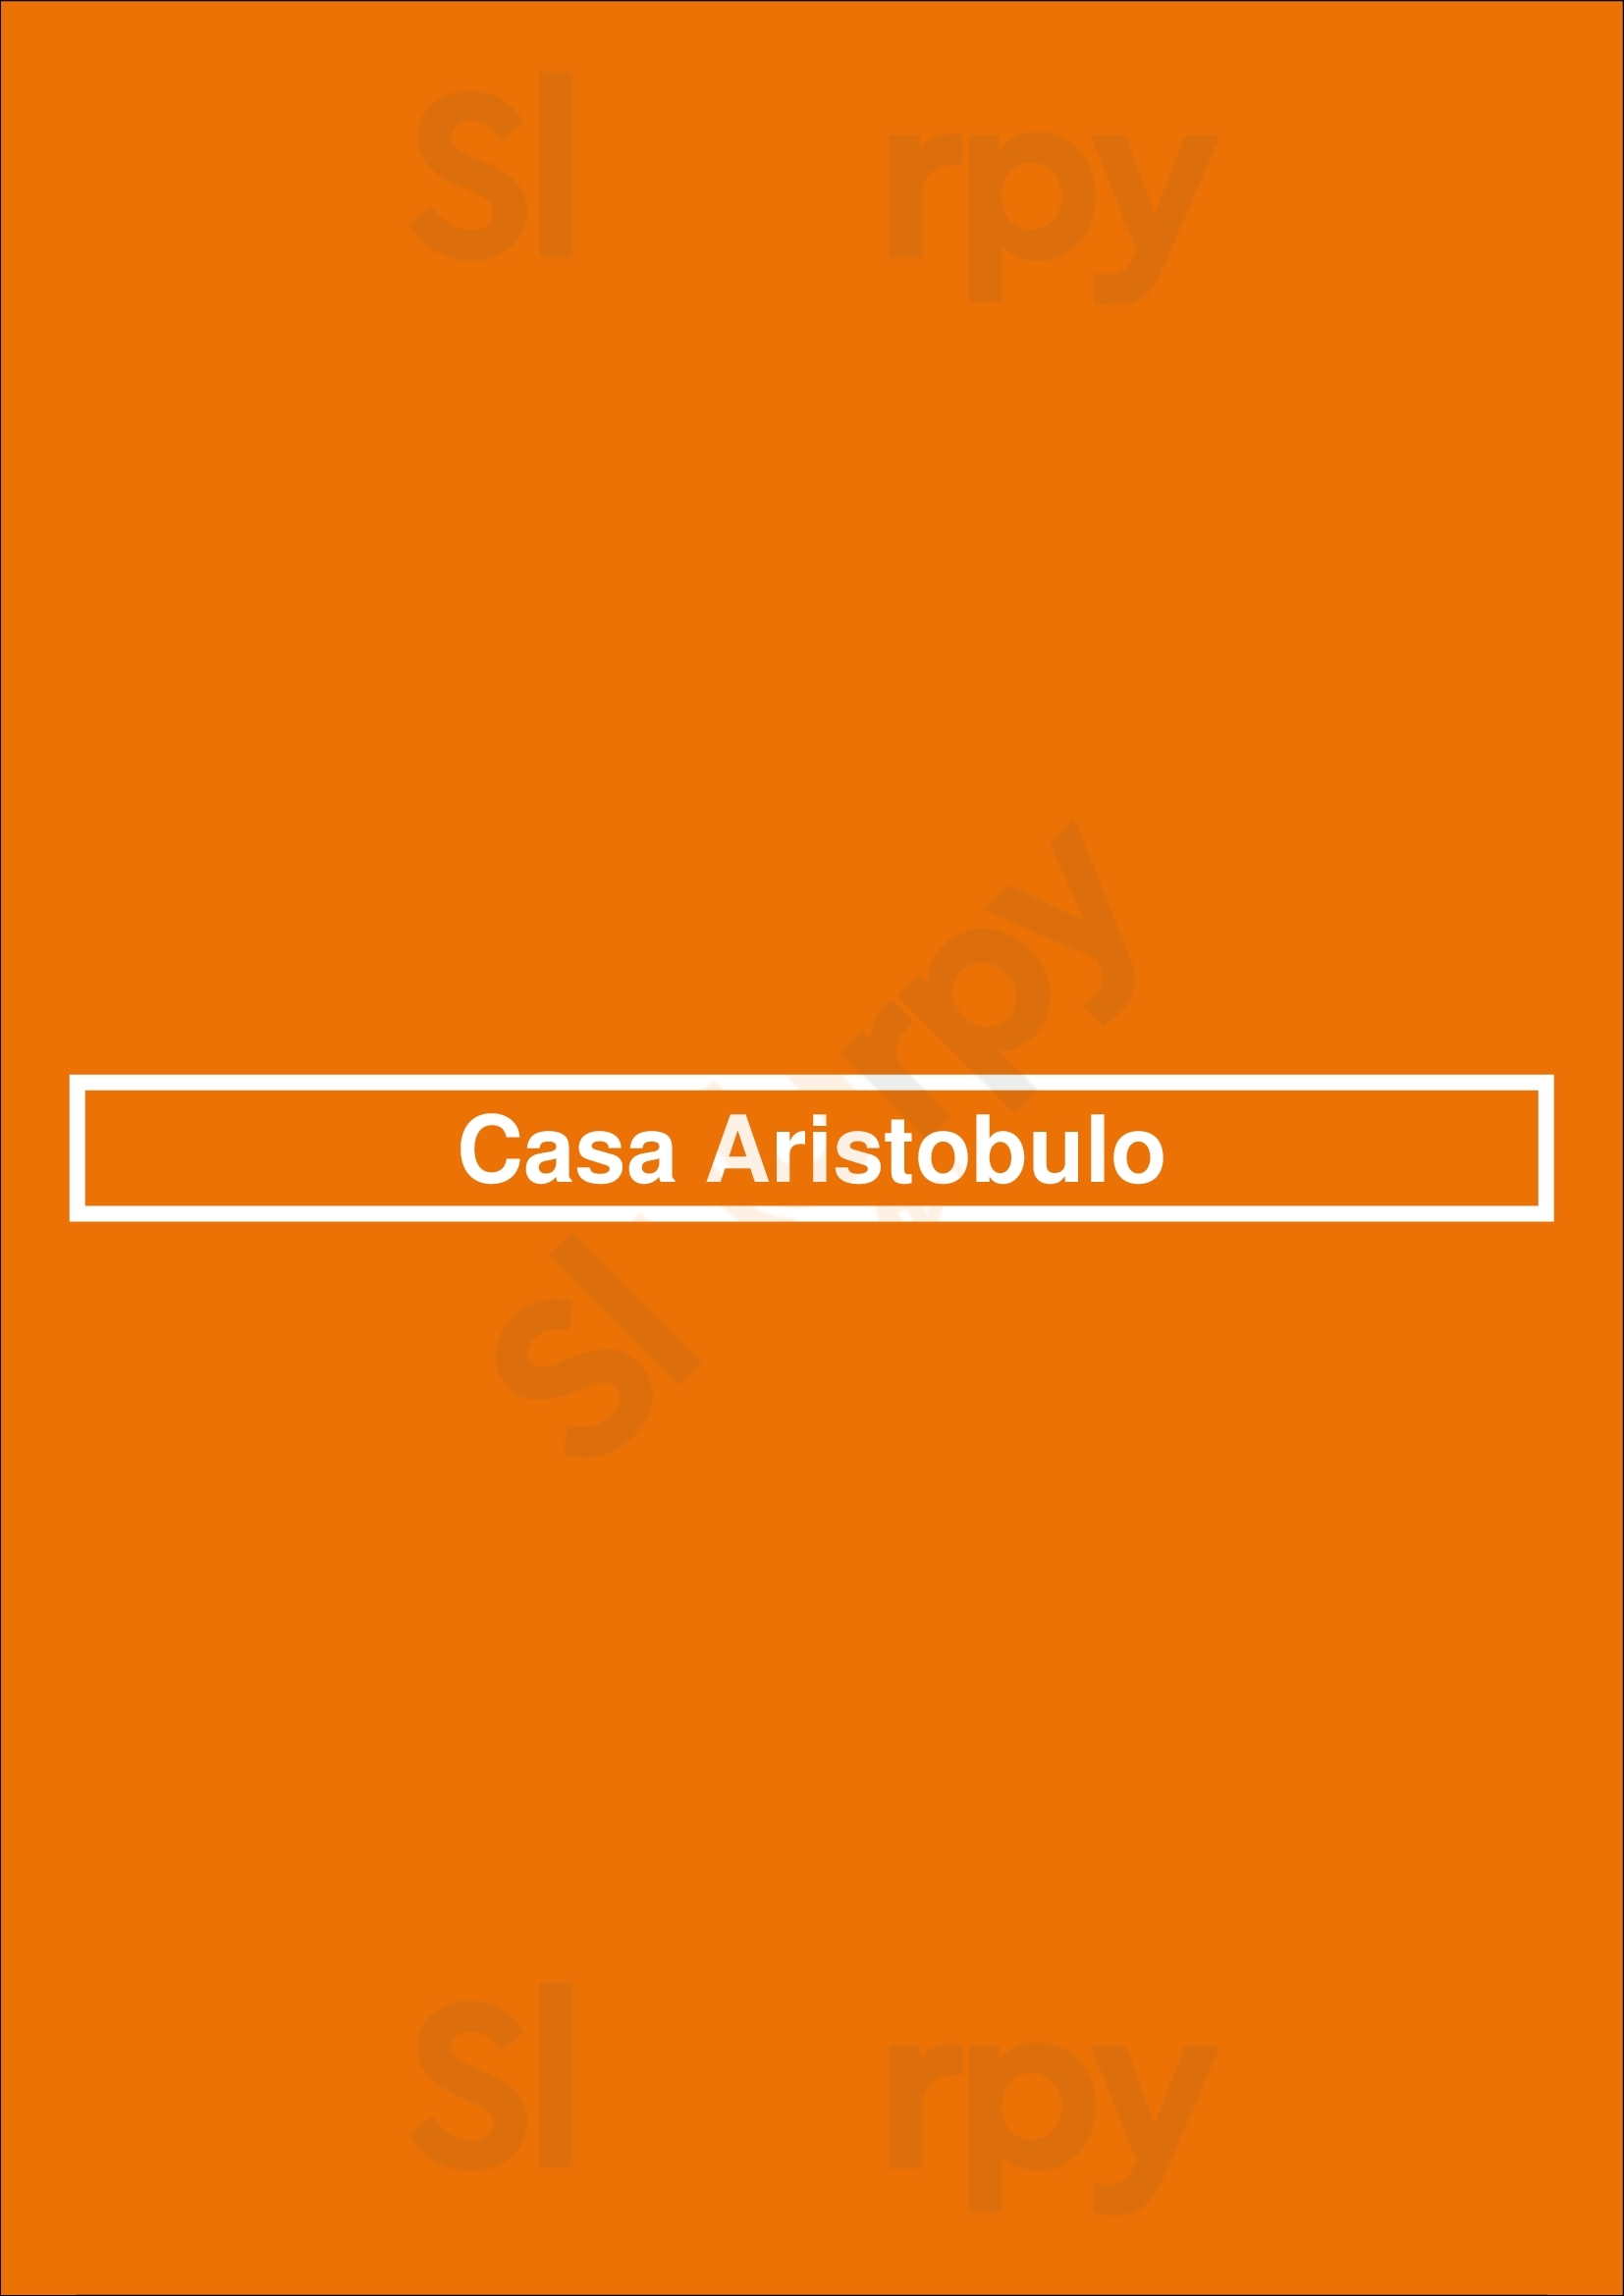 Casa Aristobulo Buenos Aires Menu - 1